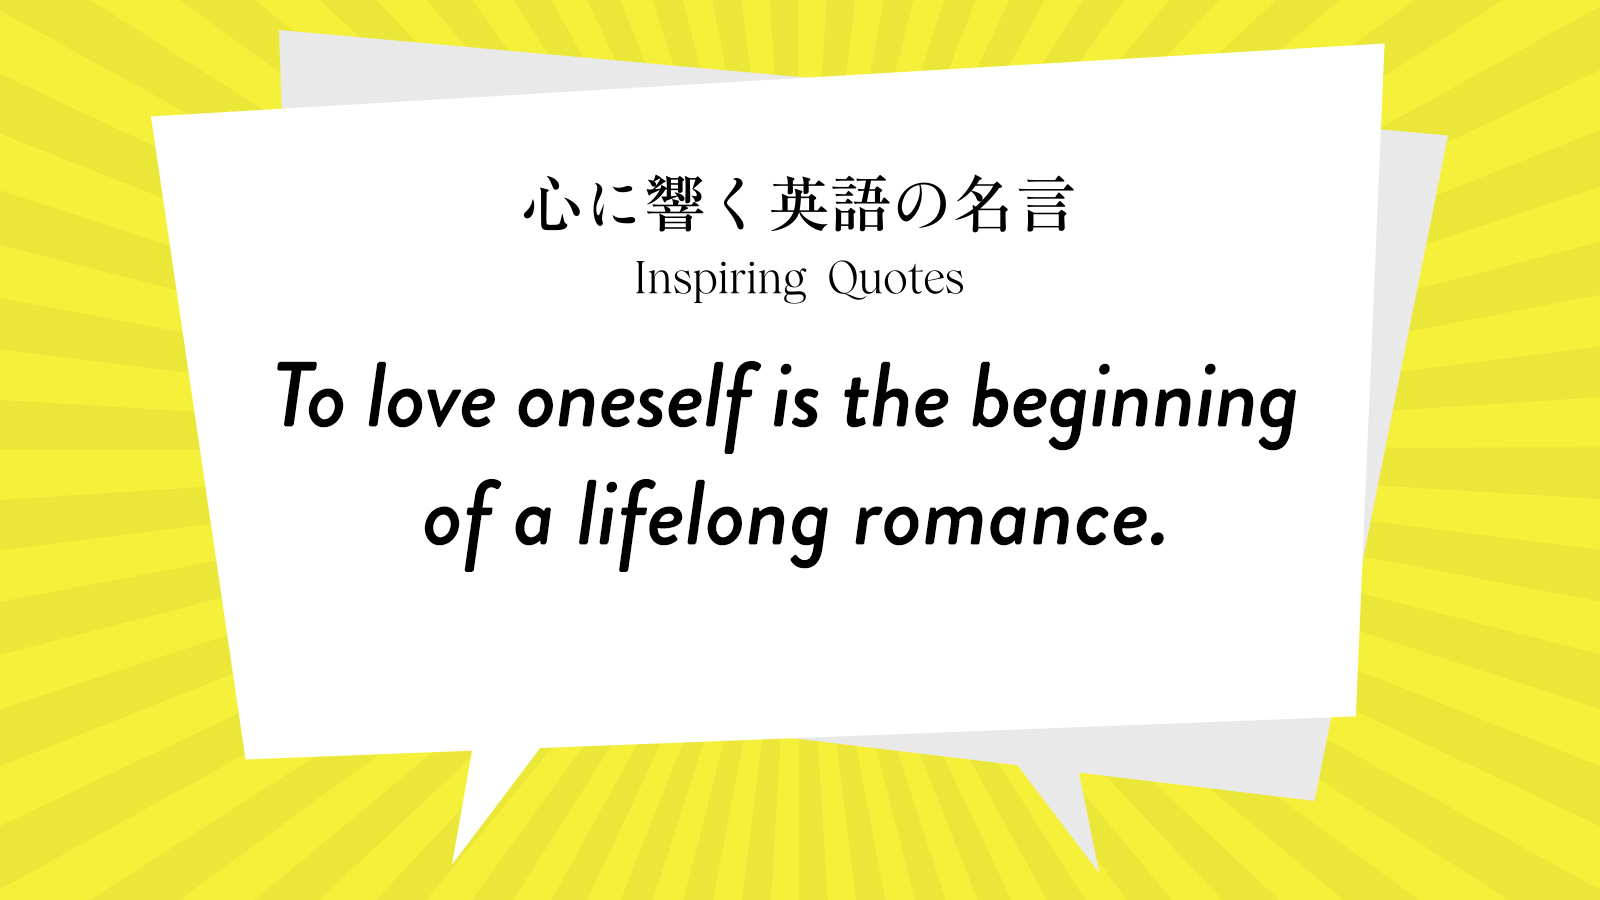 今週の名言 “To love oneself is the beginning of a lifelong romance.” | Inspiring Quotes: 心に響く英語の名言